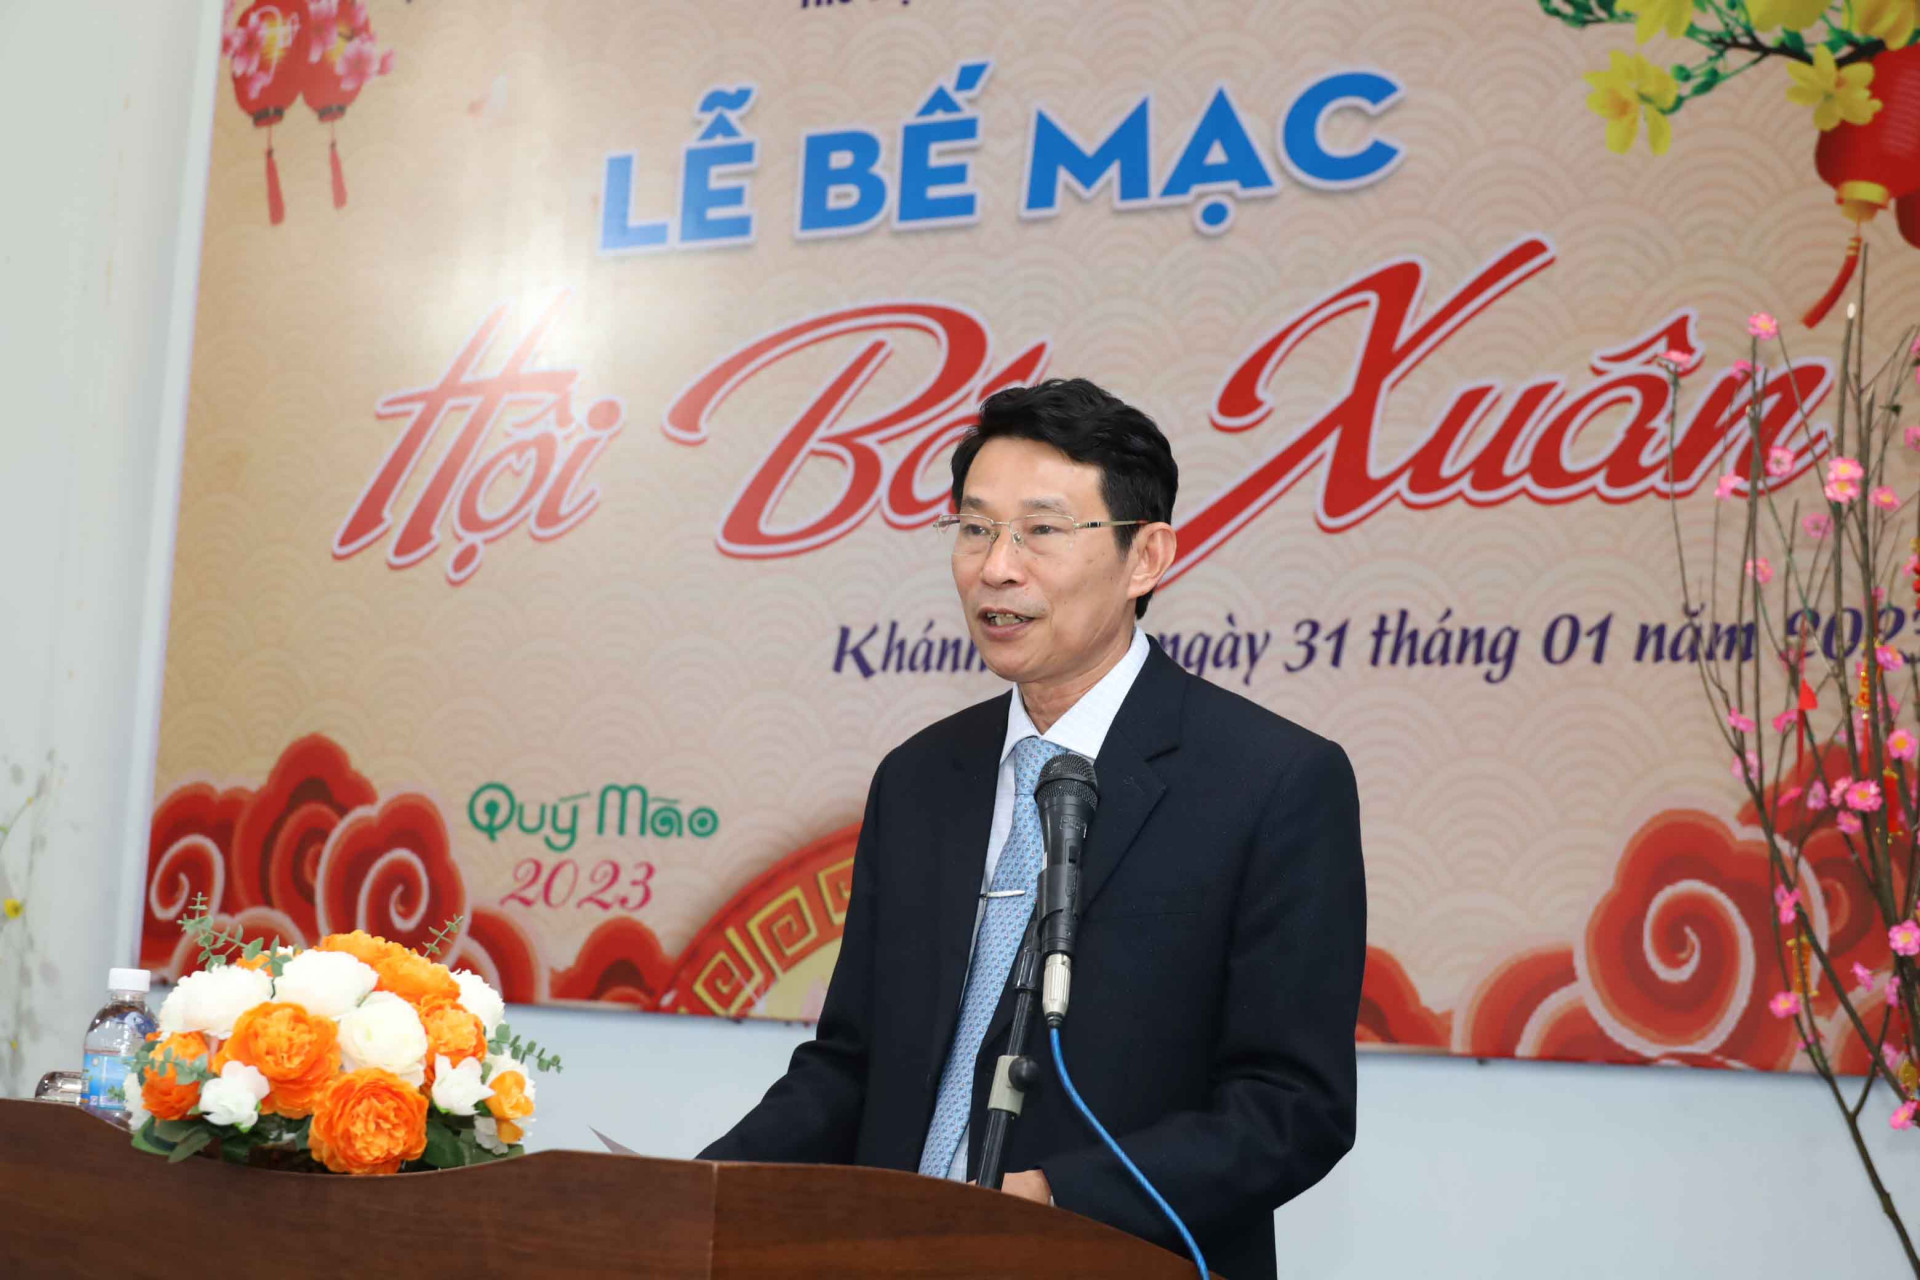 Ông Đinh Văn Thiệu phát biểu tại lễ bế mạc Hội báo Xuân 2023.